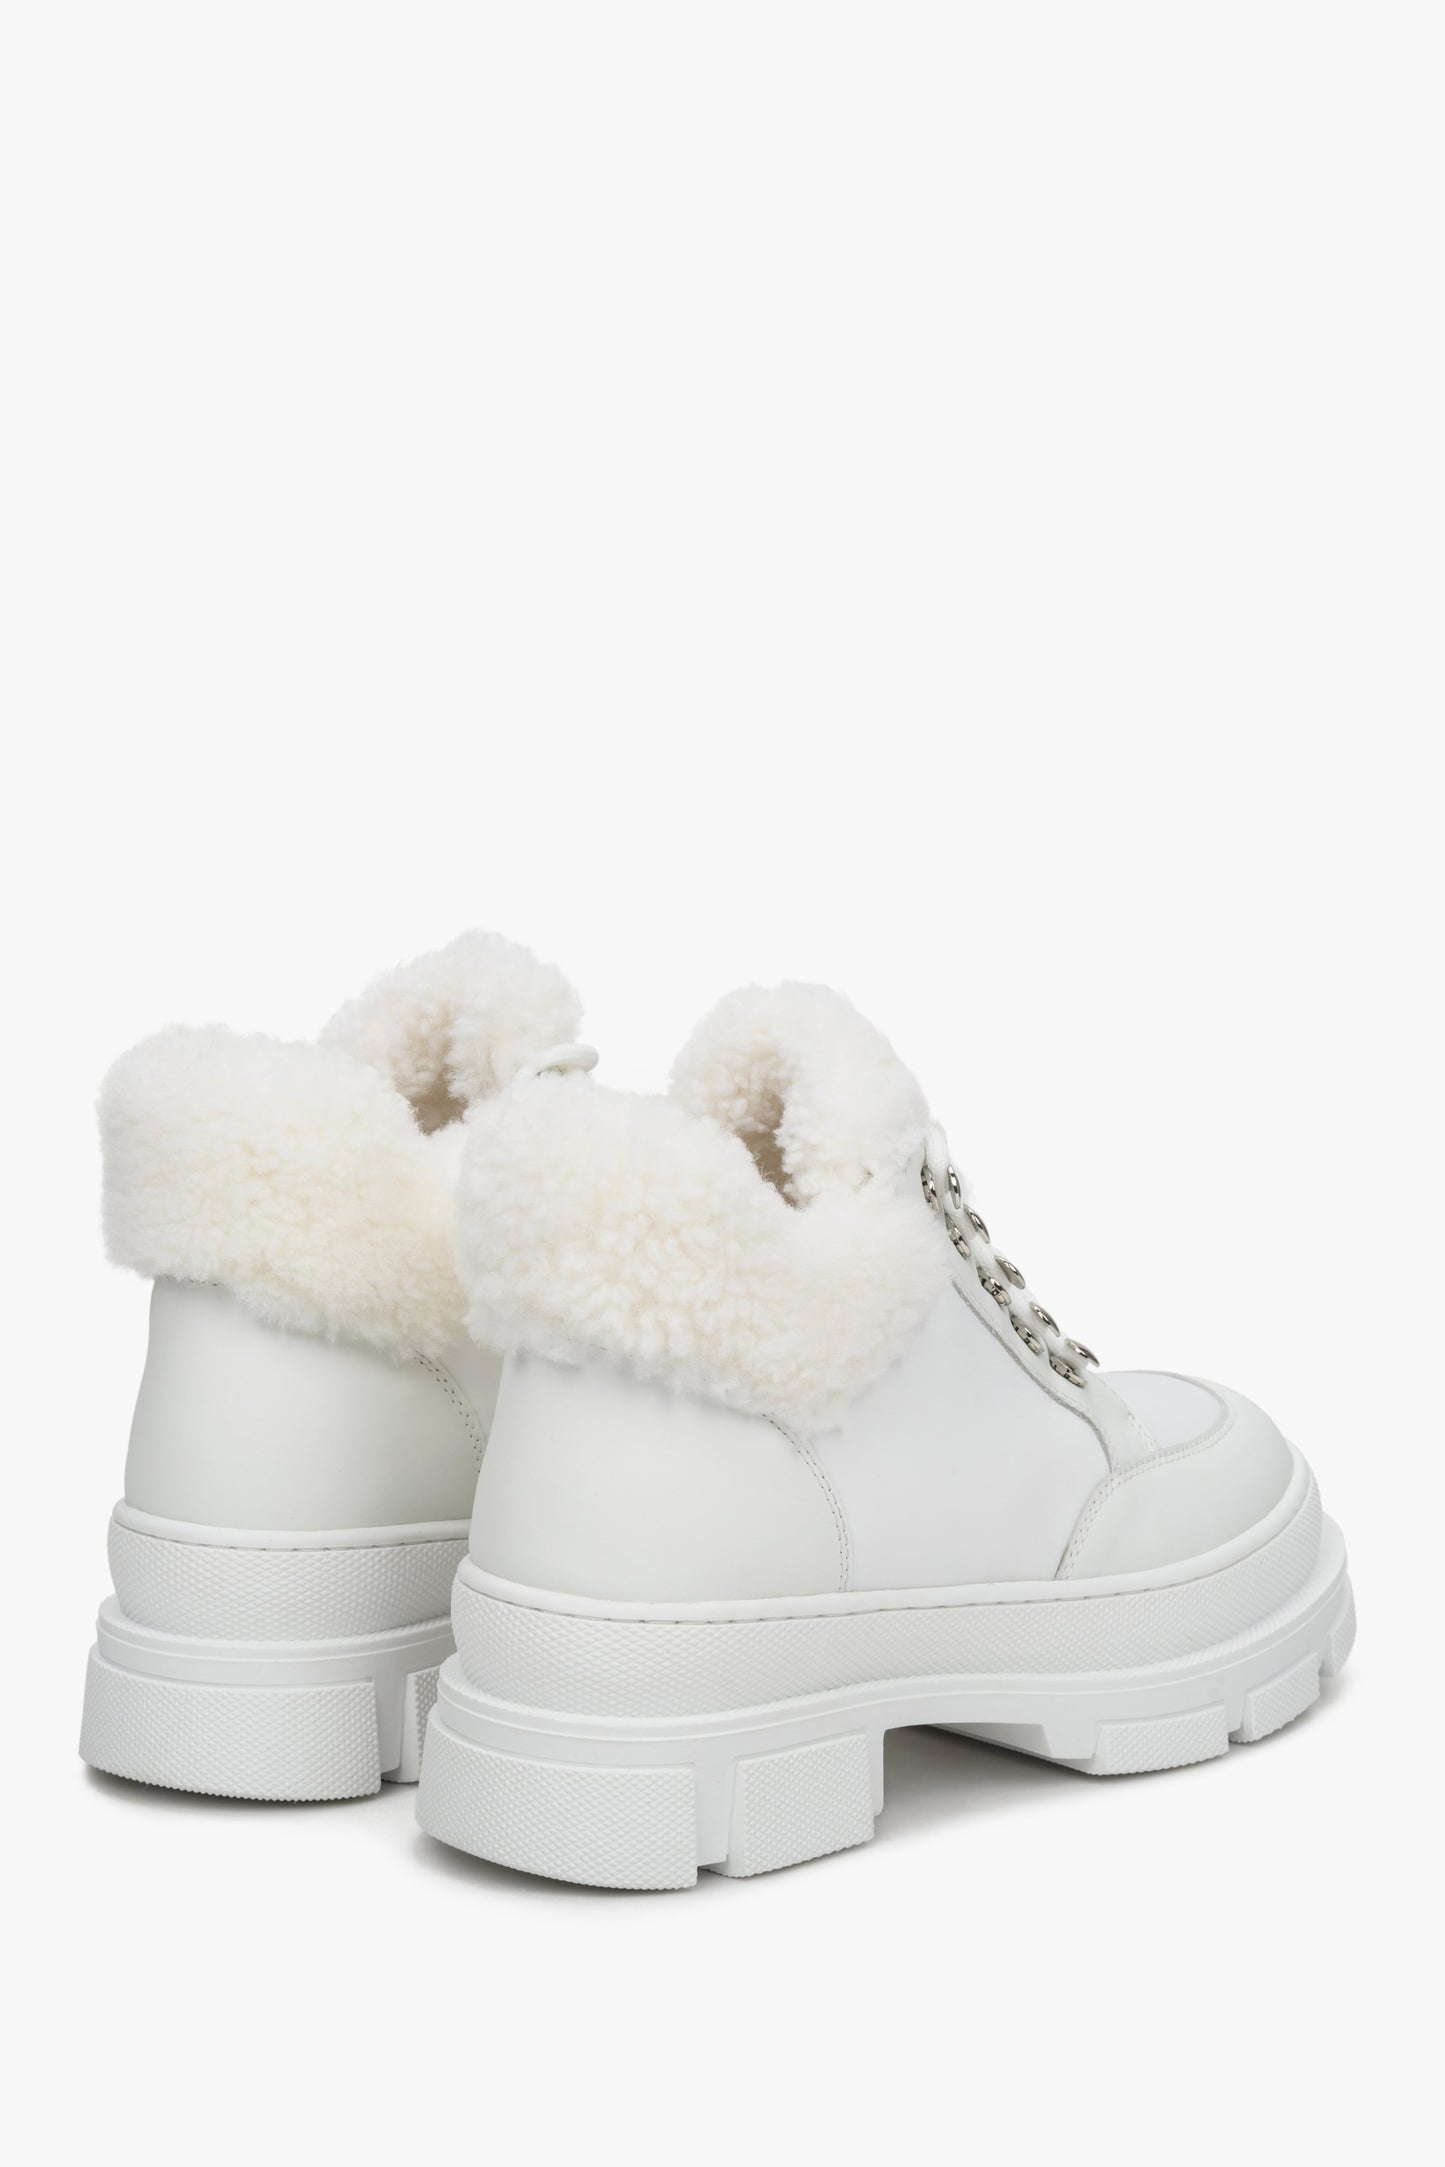 Białe botki damskie ze skóry naturalnej na zimę z futrem naturalnym - boczna i tylna część butów.